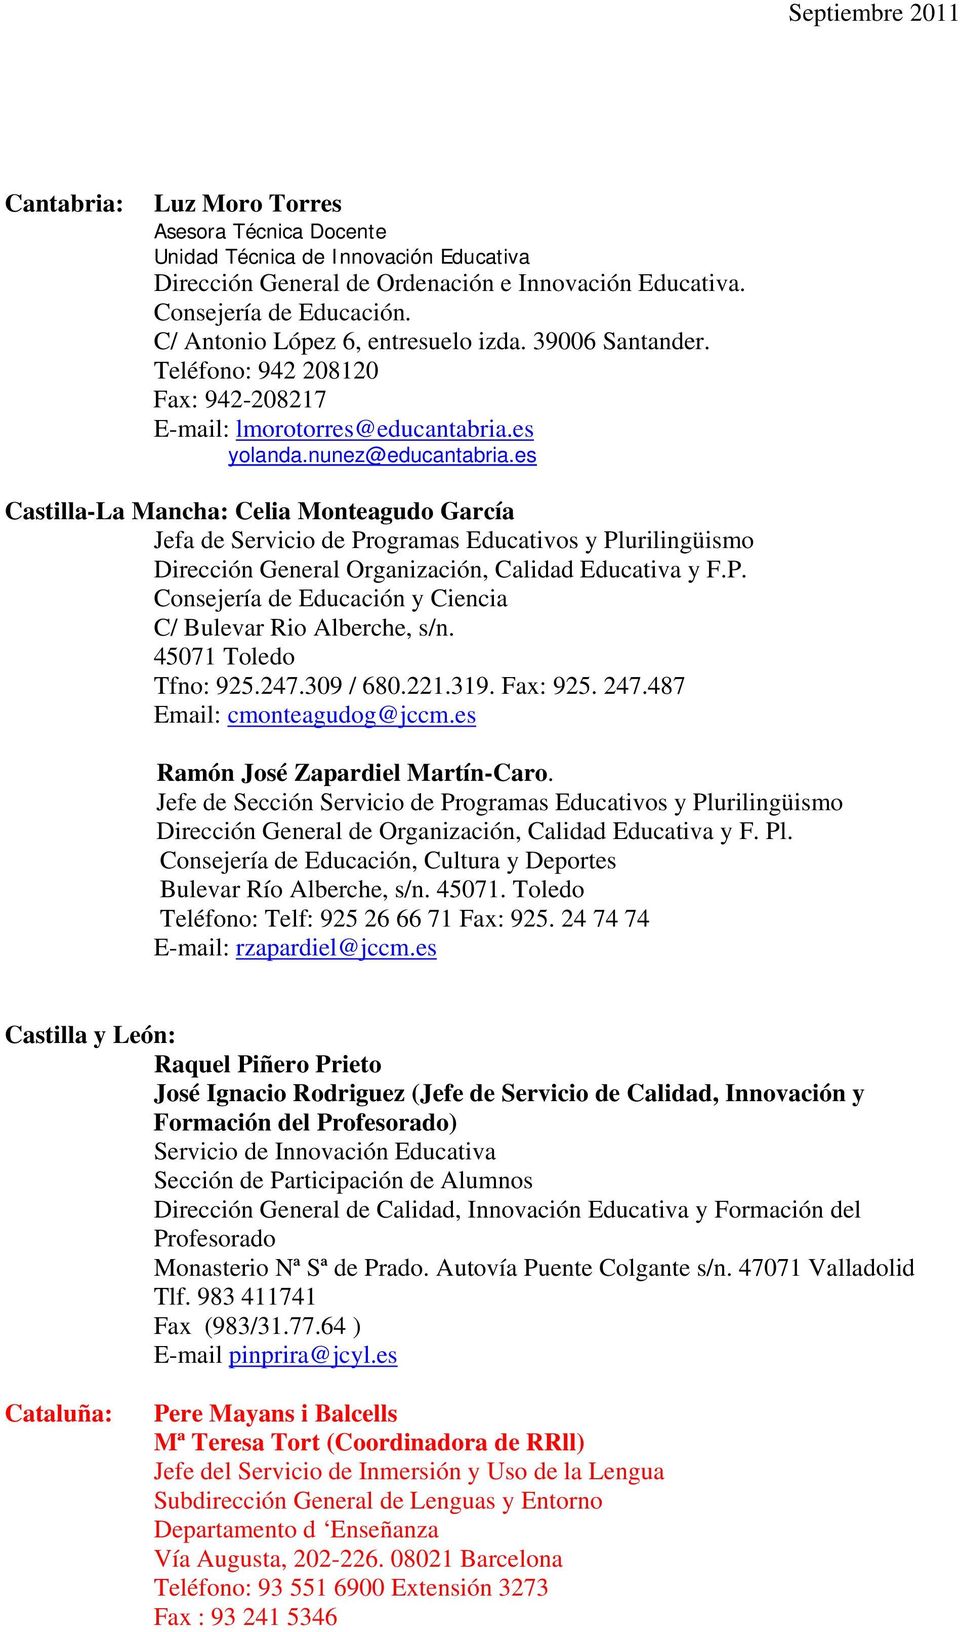 es Castilla-La Mancha: Celia Monteagudo García Jefa de Servicio de Programas Educativos y Plurilingüismo Dirección General Organización, Calidad Educativa y F.P. Consejería de Educación y Ciencia C/ Bulevar Rio Alberche, s/n.